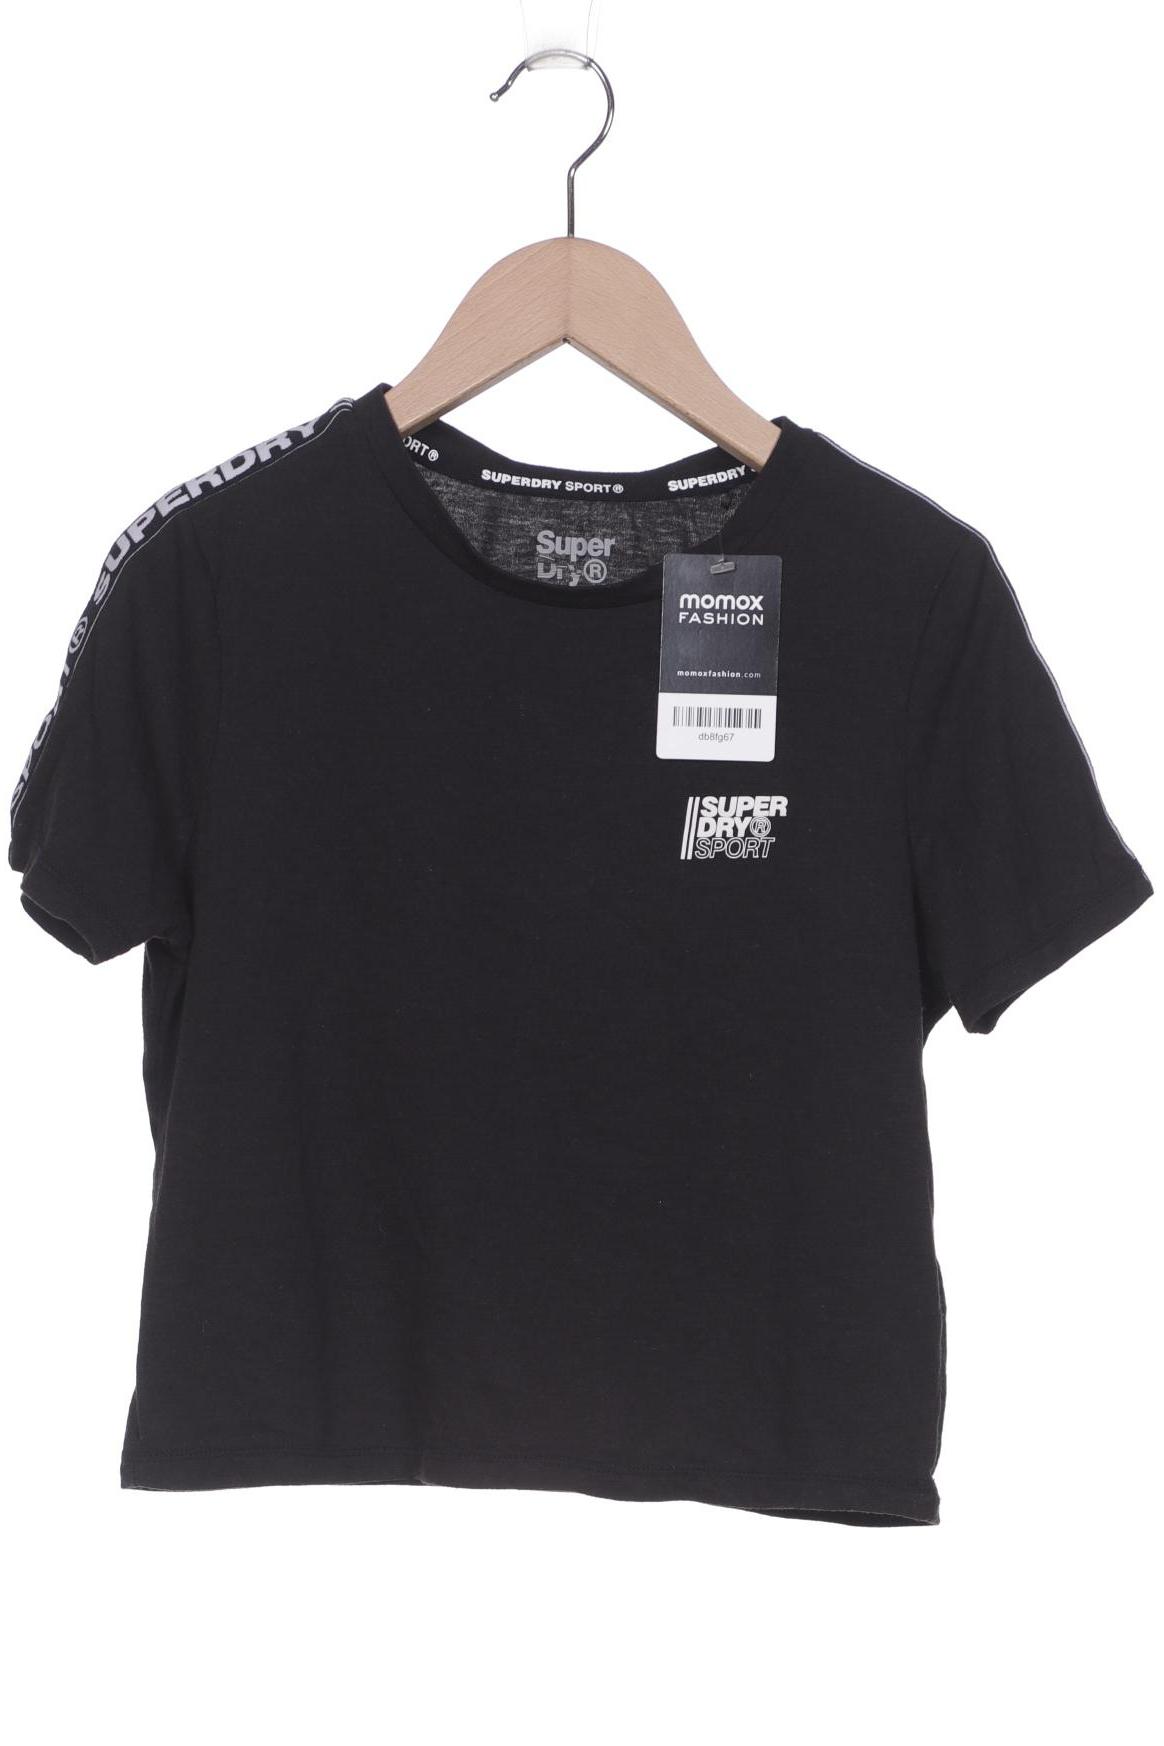 Superdry Damen T-Shirt, schwarz von Superdry